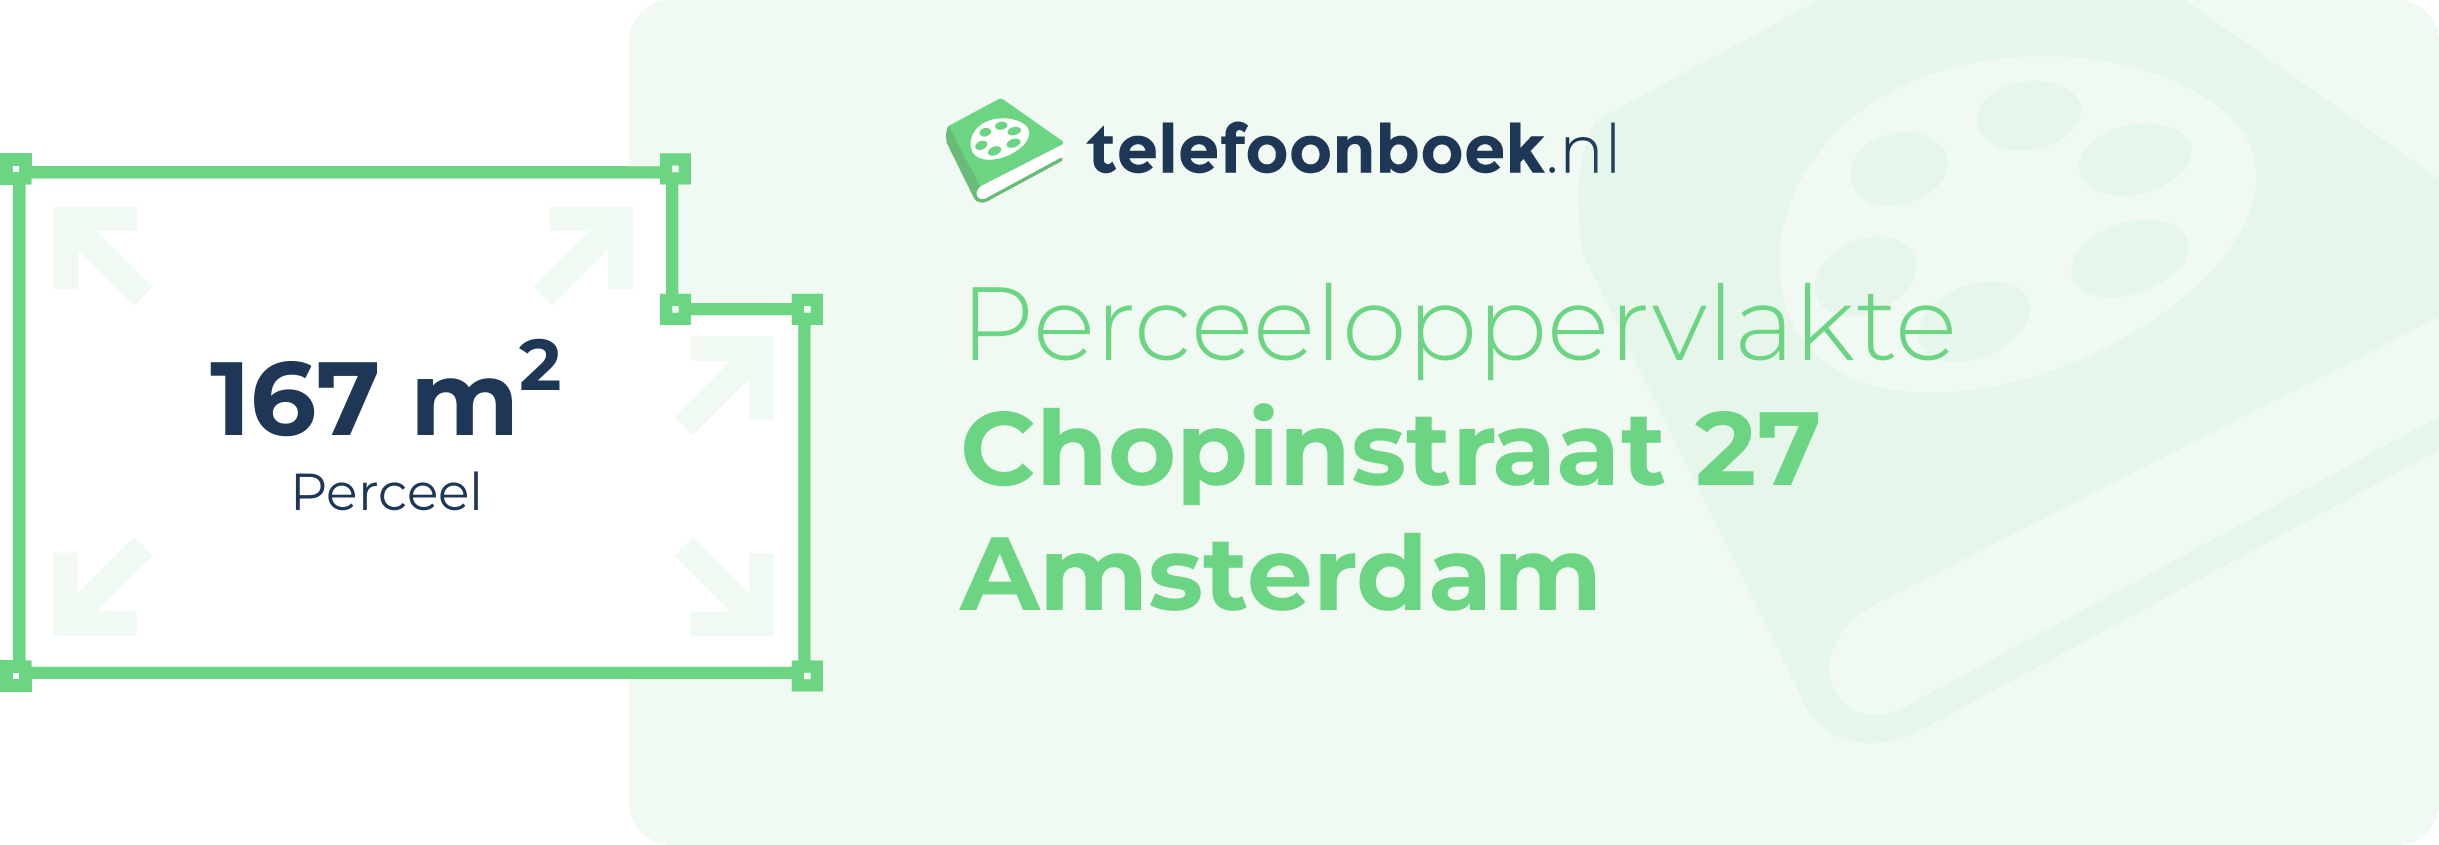 Perceeloppervlakte Chopinstraat 27 Amsterdam